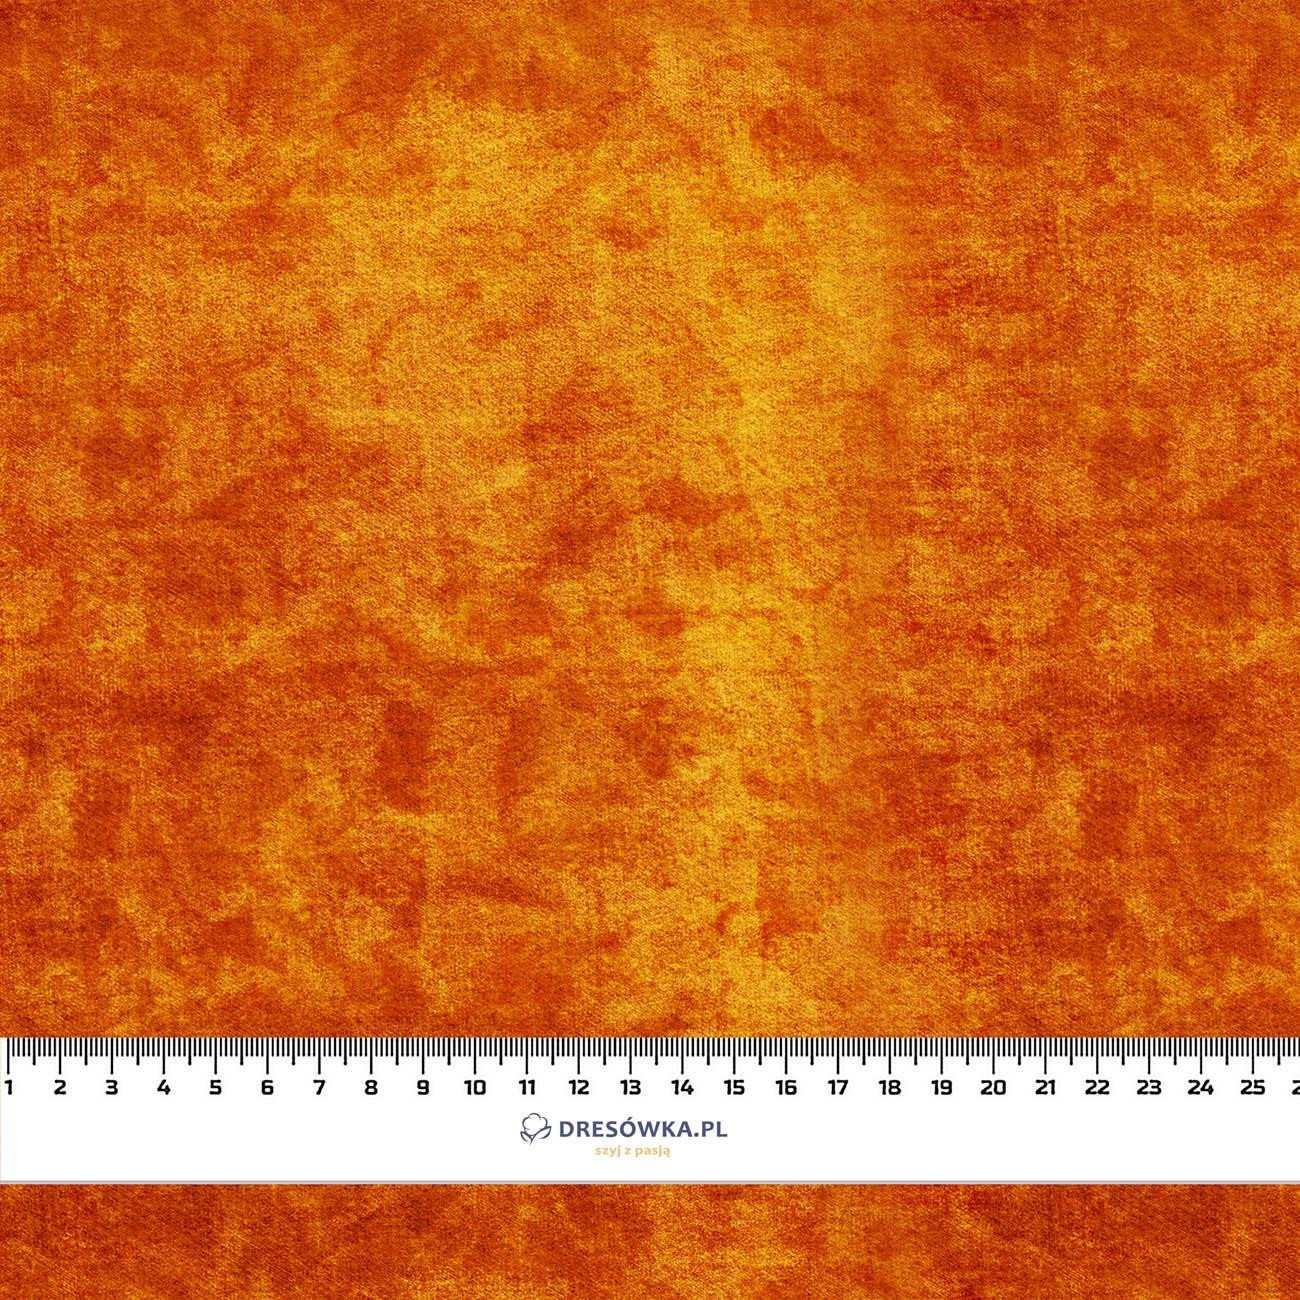 AUTUMN BATIK  / orange (AUTUMN COLORS) - Waterproof woven fabric